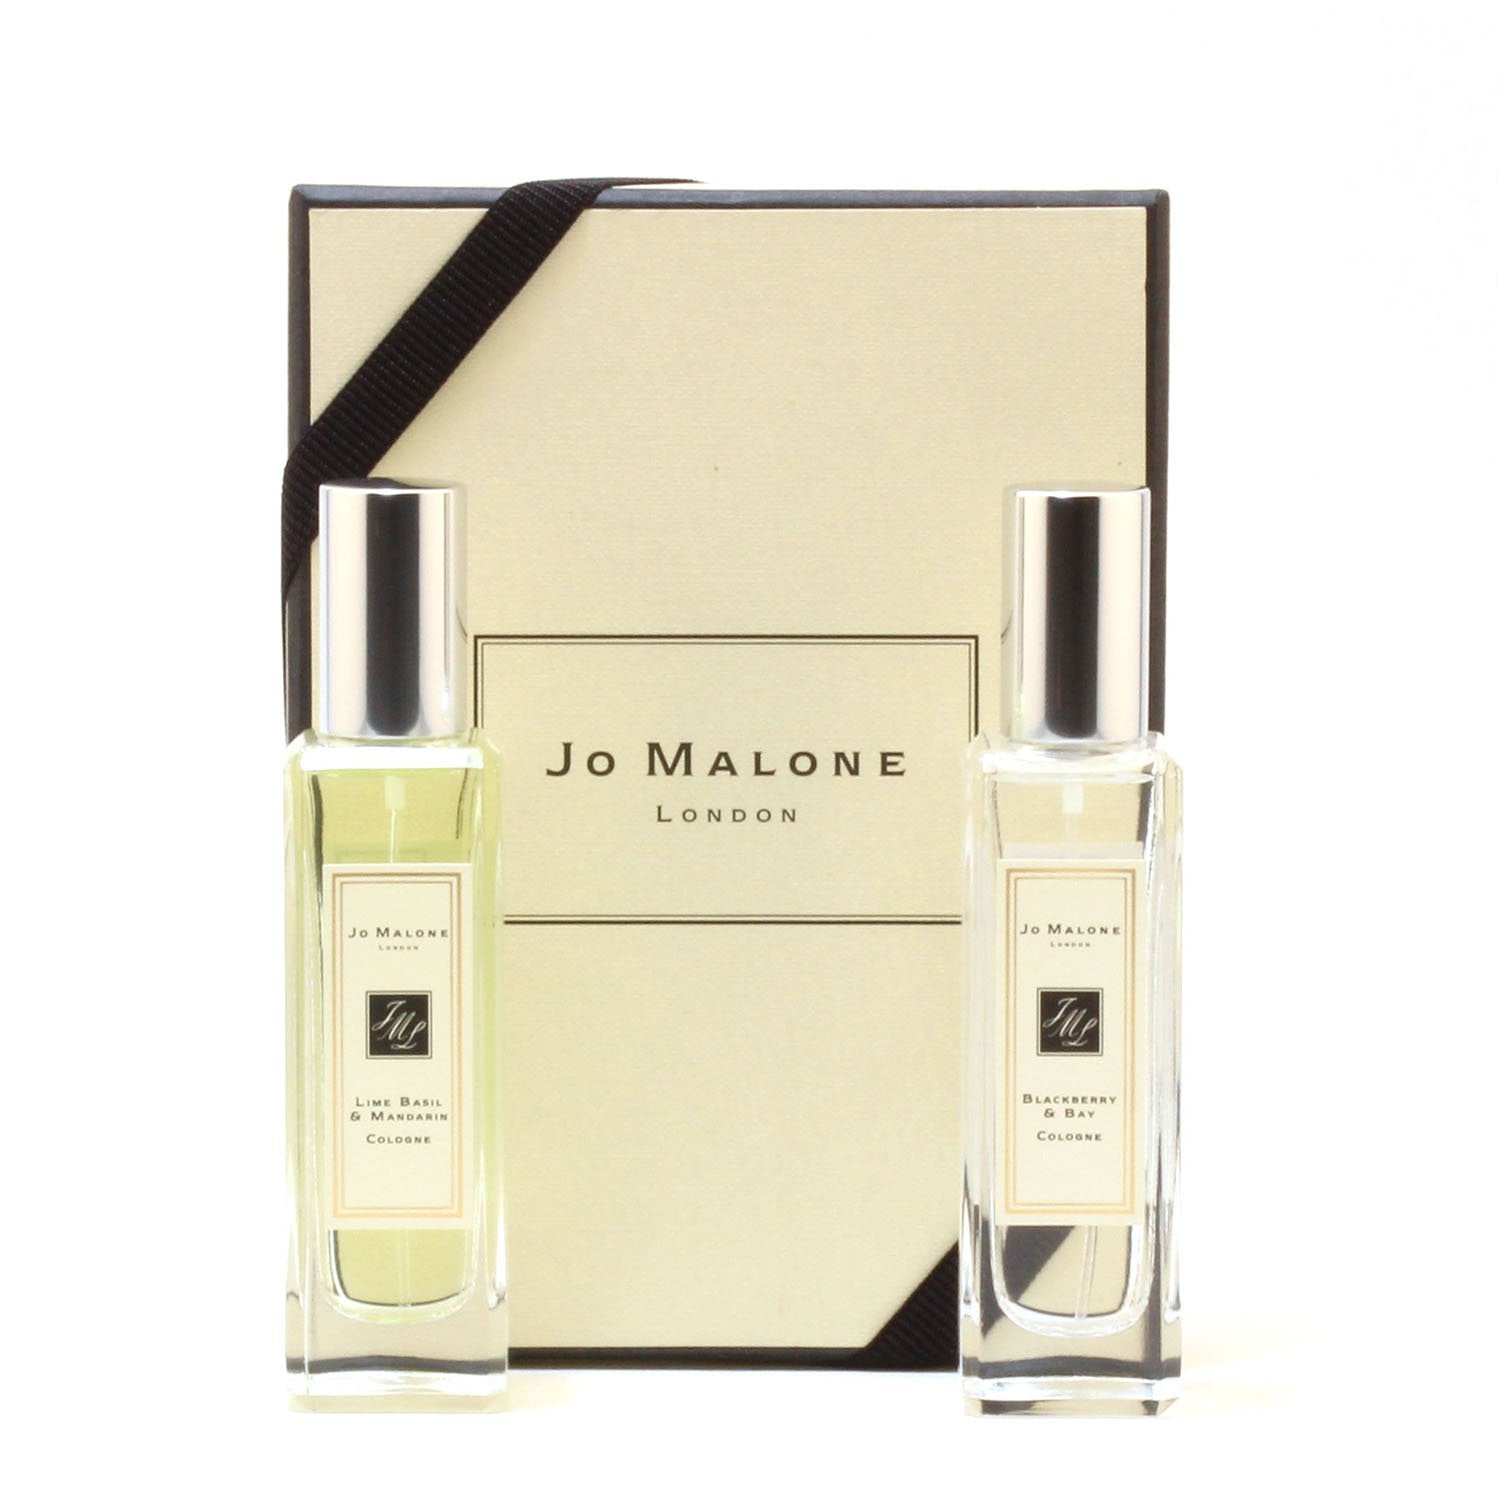 JO MALONE FOR WOMEN - MINI GIFT SET – Fragrance Room